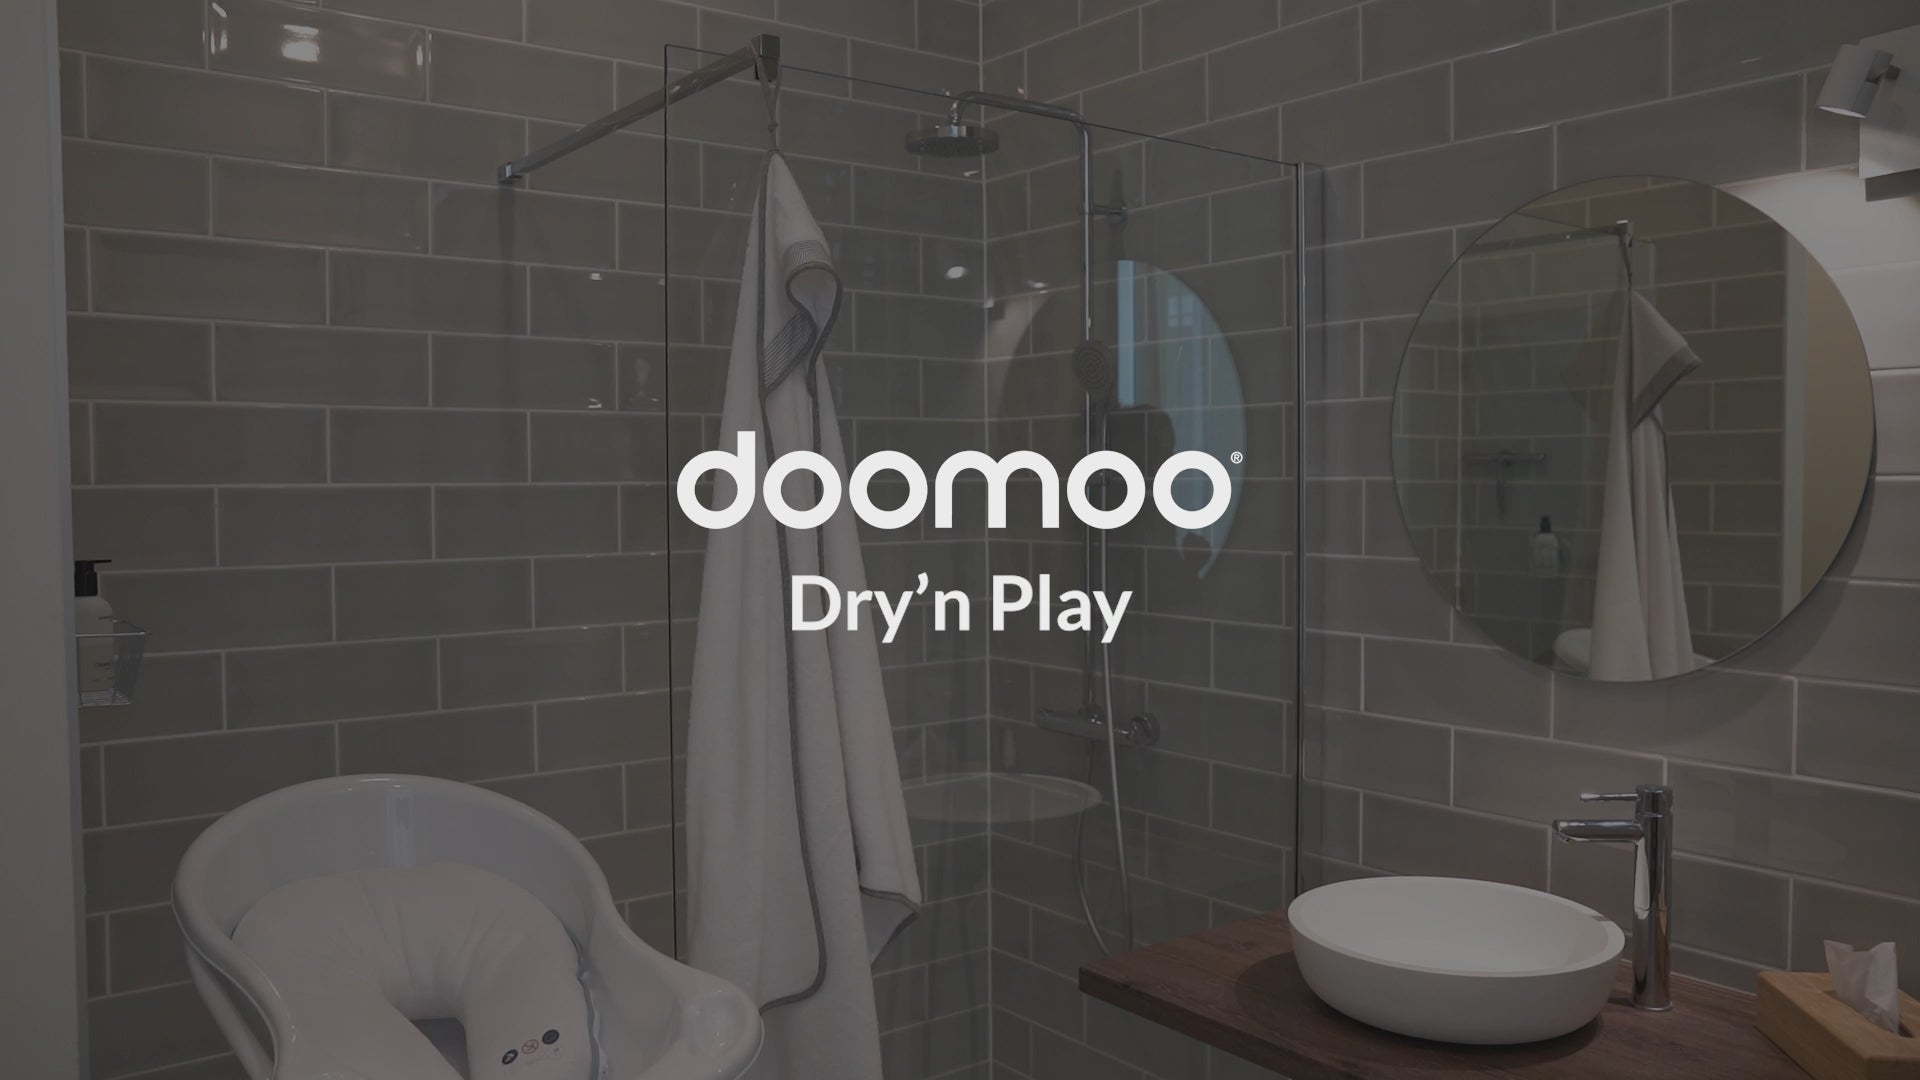 doomoo Dry'n play - Grande cape de bain pour bébé verte avec attache à l’arrière pour éviter les éclaboussures d’eau